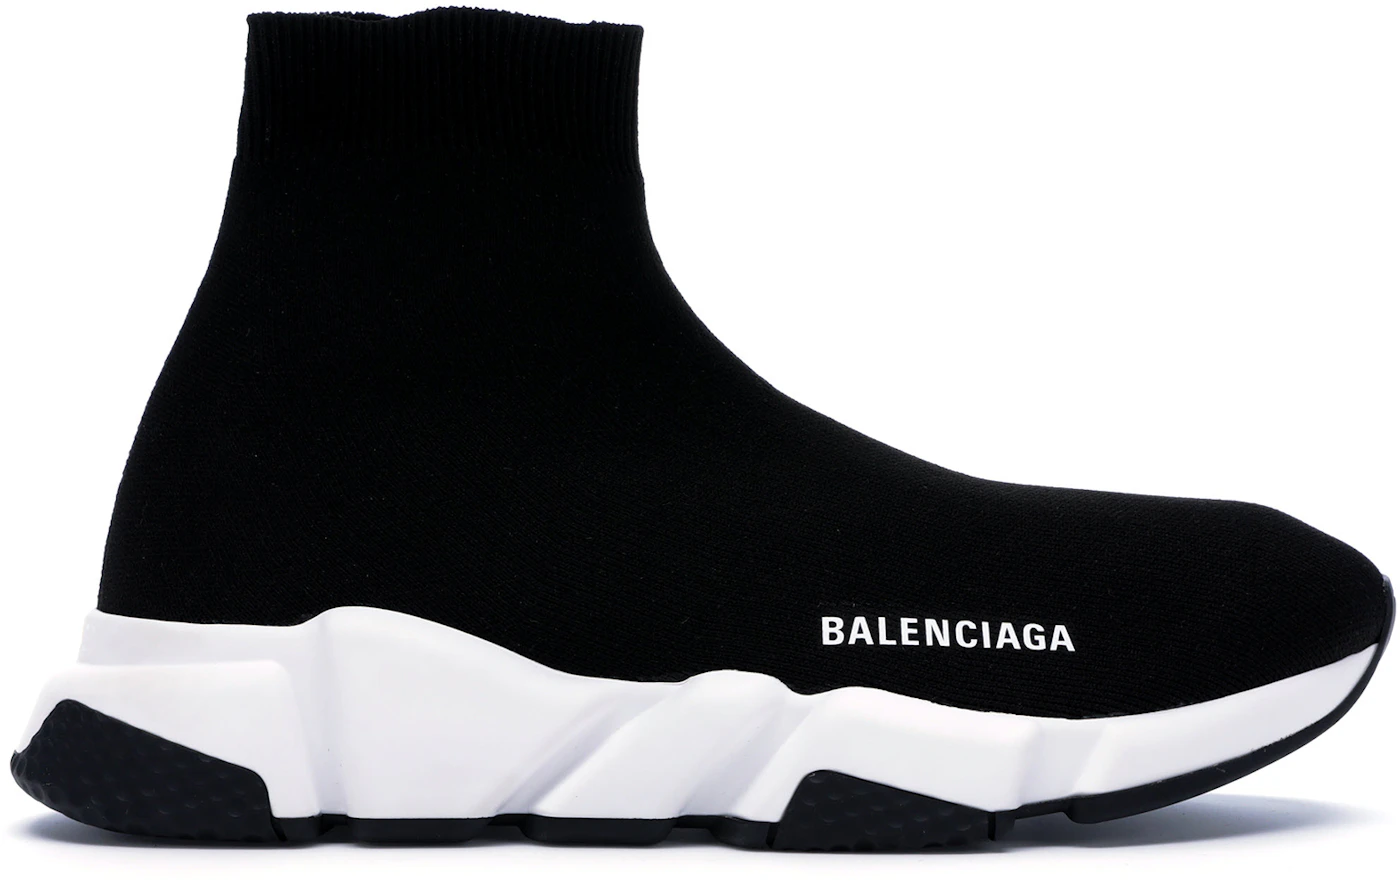 Balenciaga Speed Trainer Black (2018) 530349 W05G9 1000/530349 W05G0 1000 - US